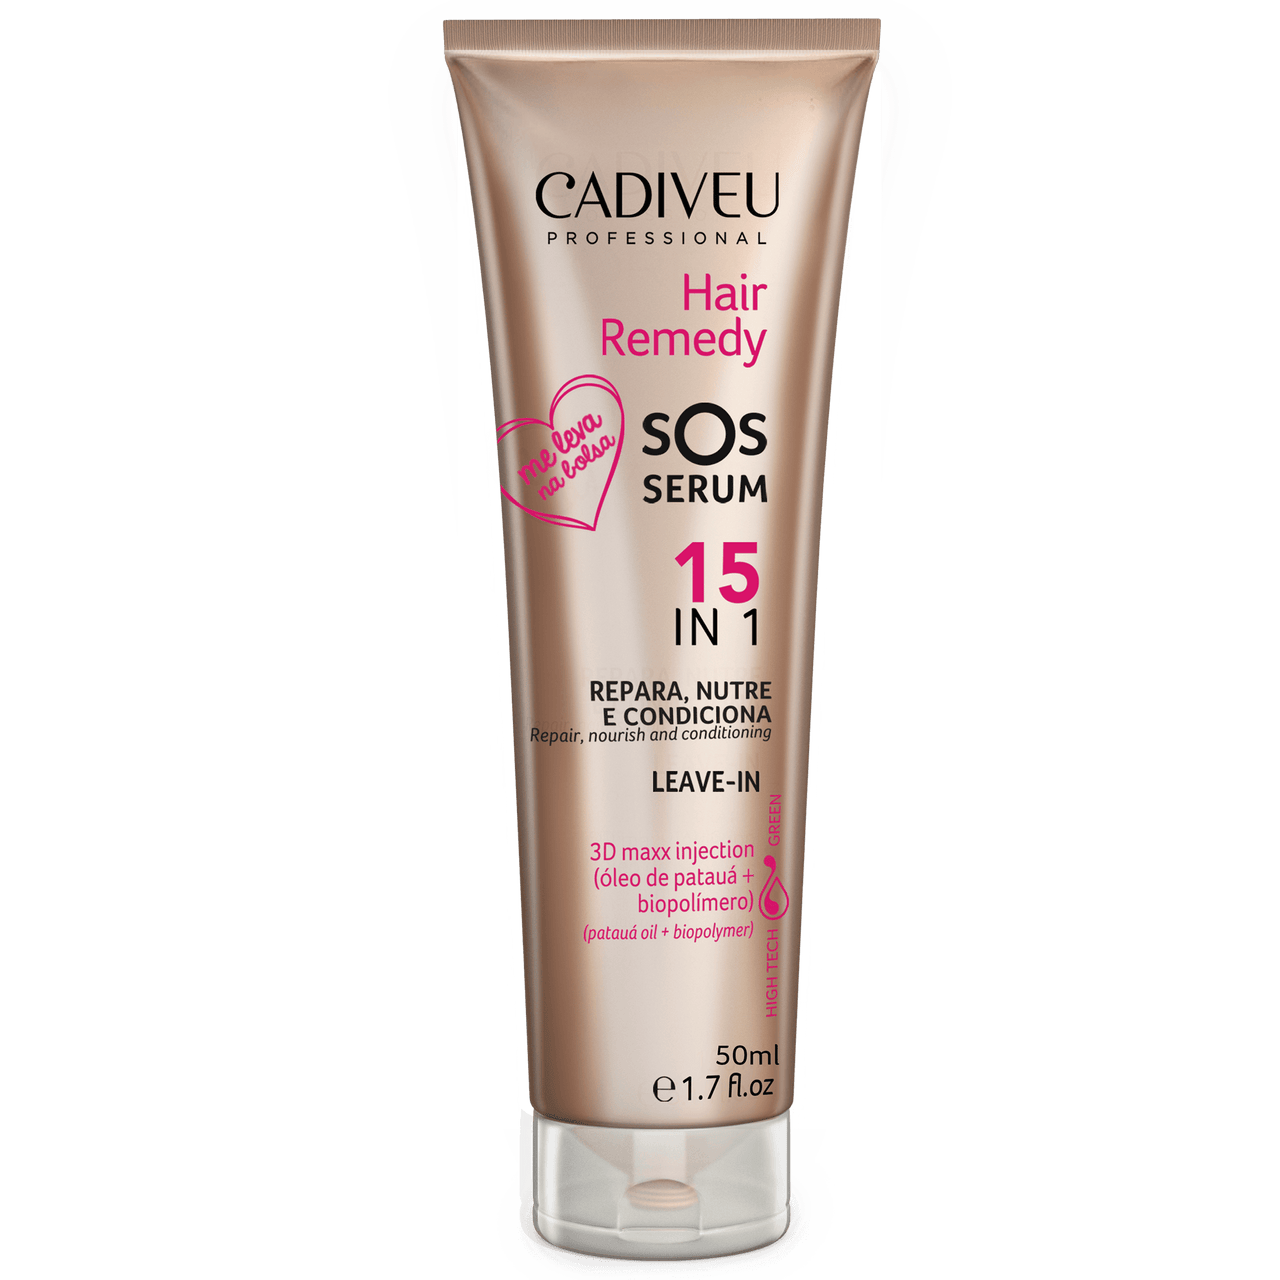 CADIVEU - Hair Remedy SOS, Serum 150ml